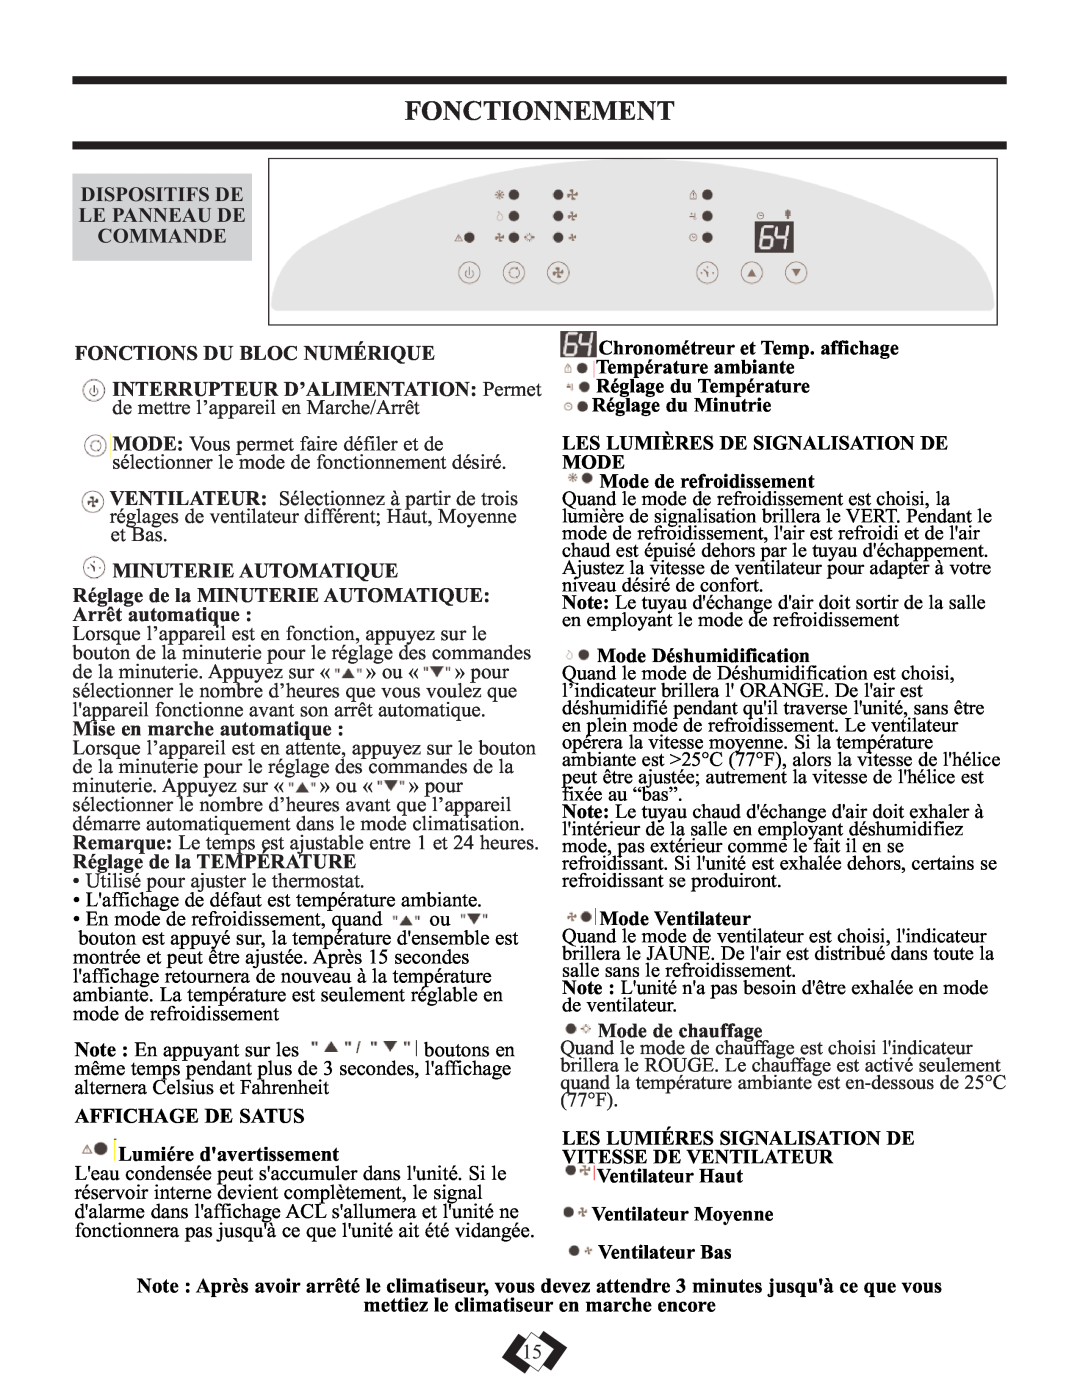 Danby DPAC12010H Fonctionnement, Dispositifs De Le Panneau De Commande, Fonctions Du Bloc Numérique, Minuterie Automatique 